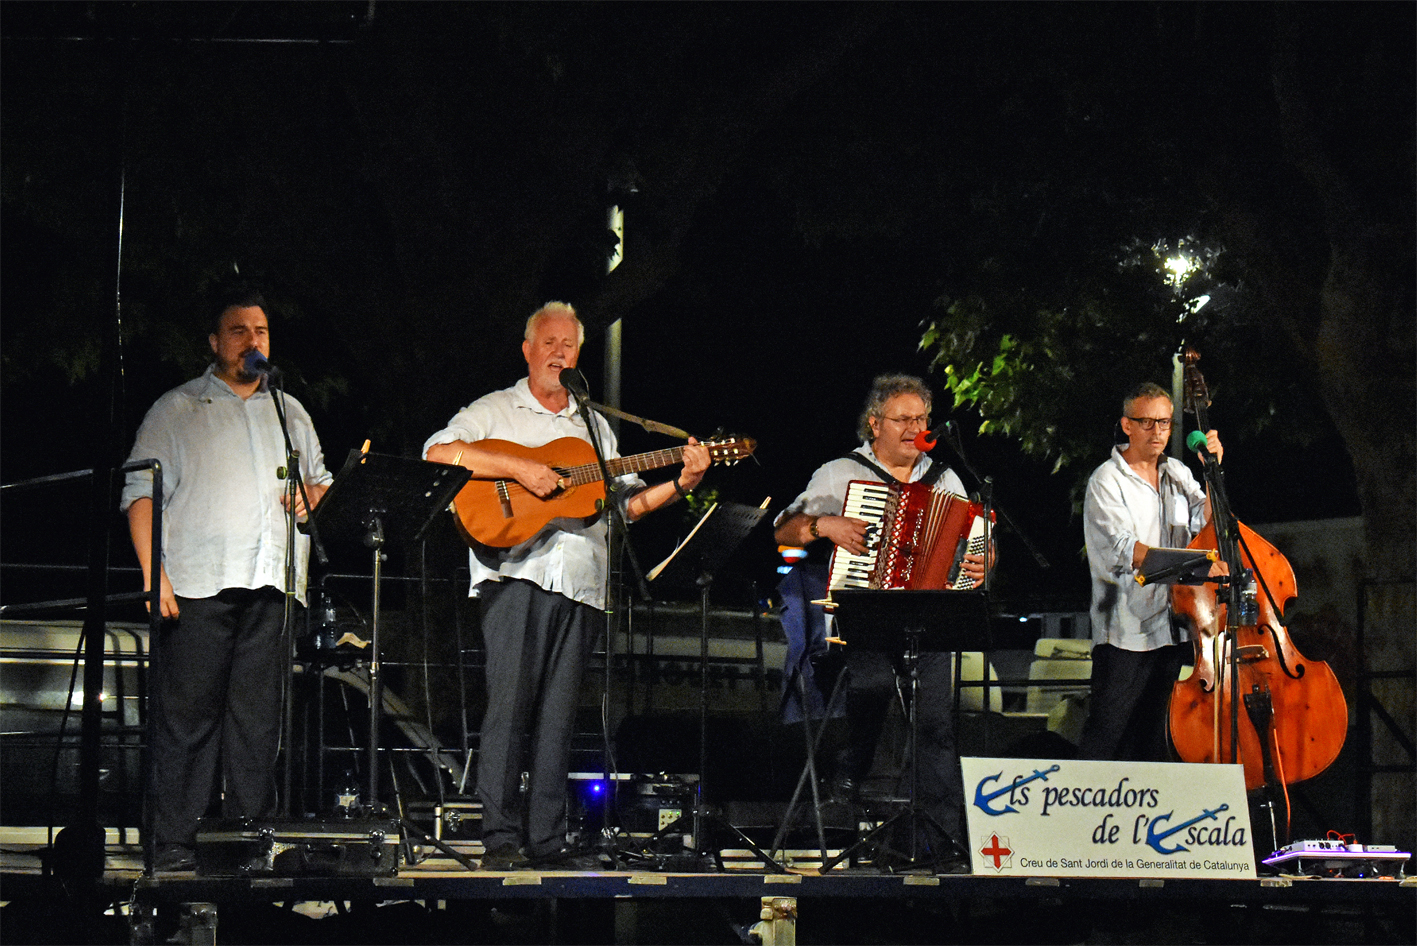 Cantada d'havaneres d'Els Pescadors de L'Escala al Parc Municipal Macary i Viader, dins de la Festa Major de Súria 2023.